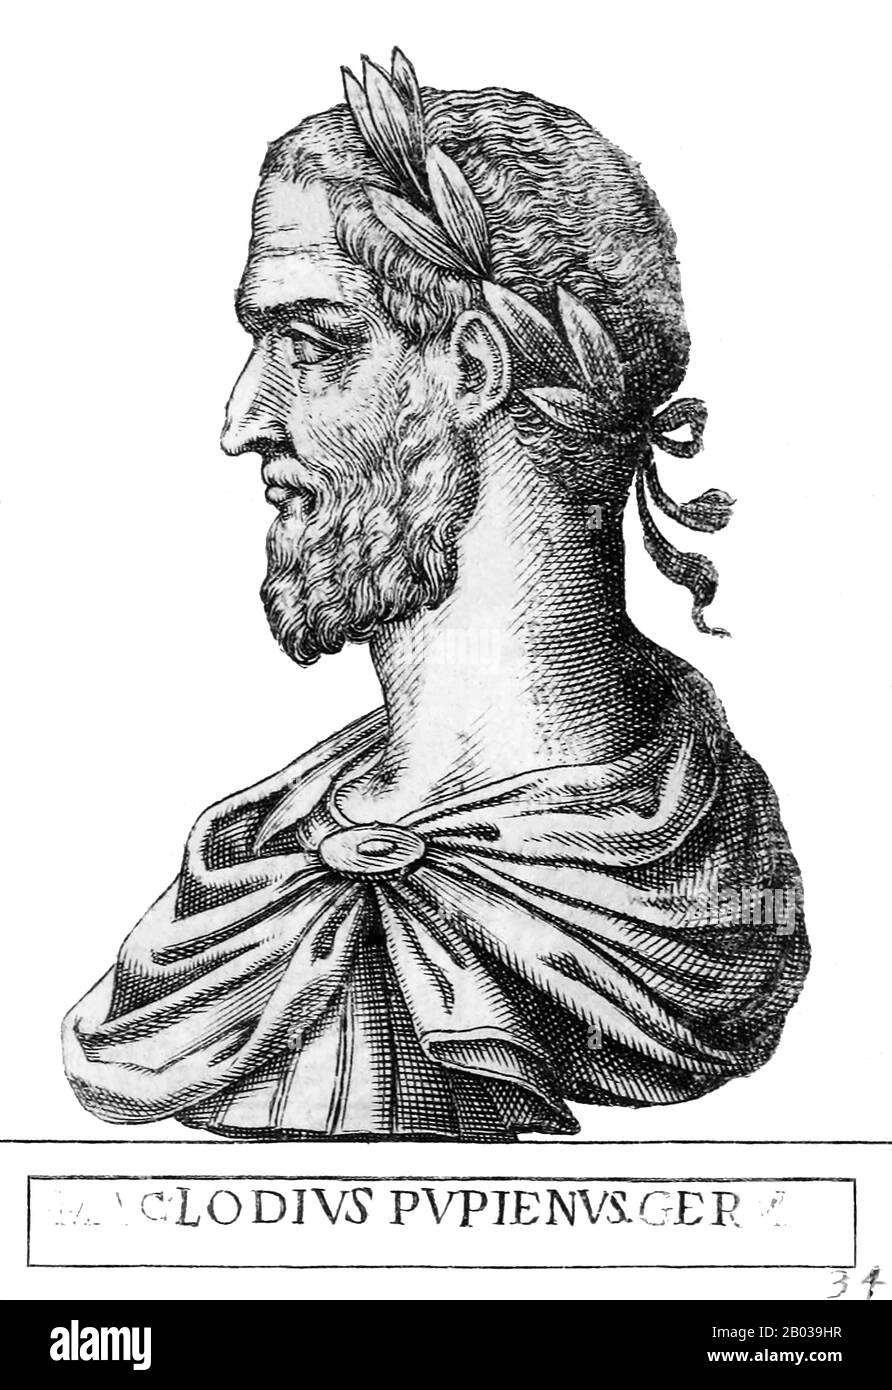 Pupienus (165/170-238), également connu sous le nom de Pupienus Maximus, était sénateur au Sénat romain qui avait pris le pouvoir et l'influence par le succès militaire sous la domination de la dynastie Severan. Il a été consul pour deux mandats et est devenu un membre important du Sénat. Lorsque Gordian I et son fils ont été proclamés Emperors en 238, le Sénat les a immédiatement reconnus au mépris de l'empereur Maximinus Thrax. Pupienus, un homme âgé d'ici là, a été mis sur un comité pour coordonner les efforts pour contrecarrer Maximinus jusqu'à ce que les Gordiens puissent arriver à Rome. Les Gordiens sont morts moins d'un mois après leur décl Banque D'Images